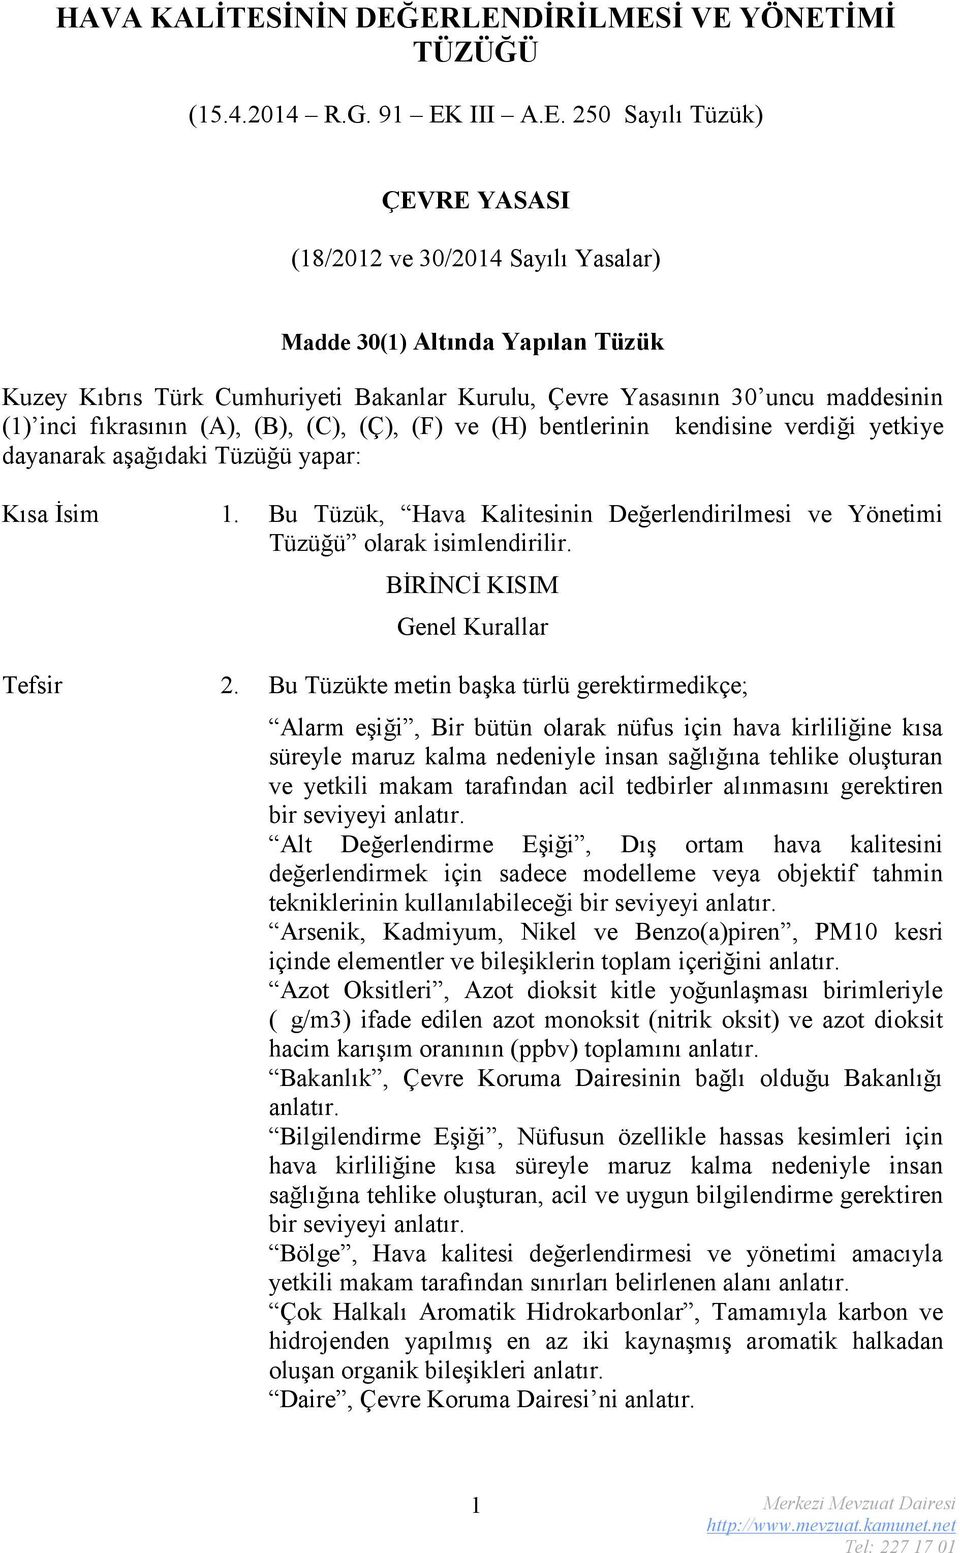 ERLENDİRİLMESİ VE YÖNETİMİ TÜZÜĞÜ (15.4.2014 R.G. 91 EK III A.E. 250 Sayılı Tüzük) ÇEVRE YASASI (18/2012 ve 30/2014 Sayılı Yasalar) Madde 30(1) Altında Yapılan Tüzük Kuzey Kıbrıs Türk Cumhuriyeti